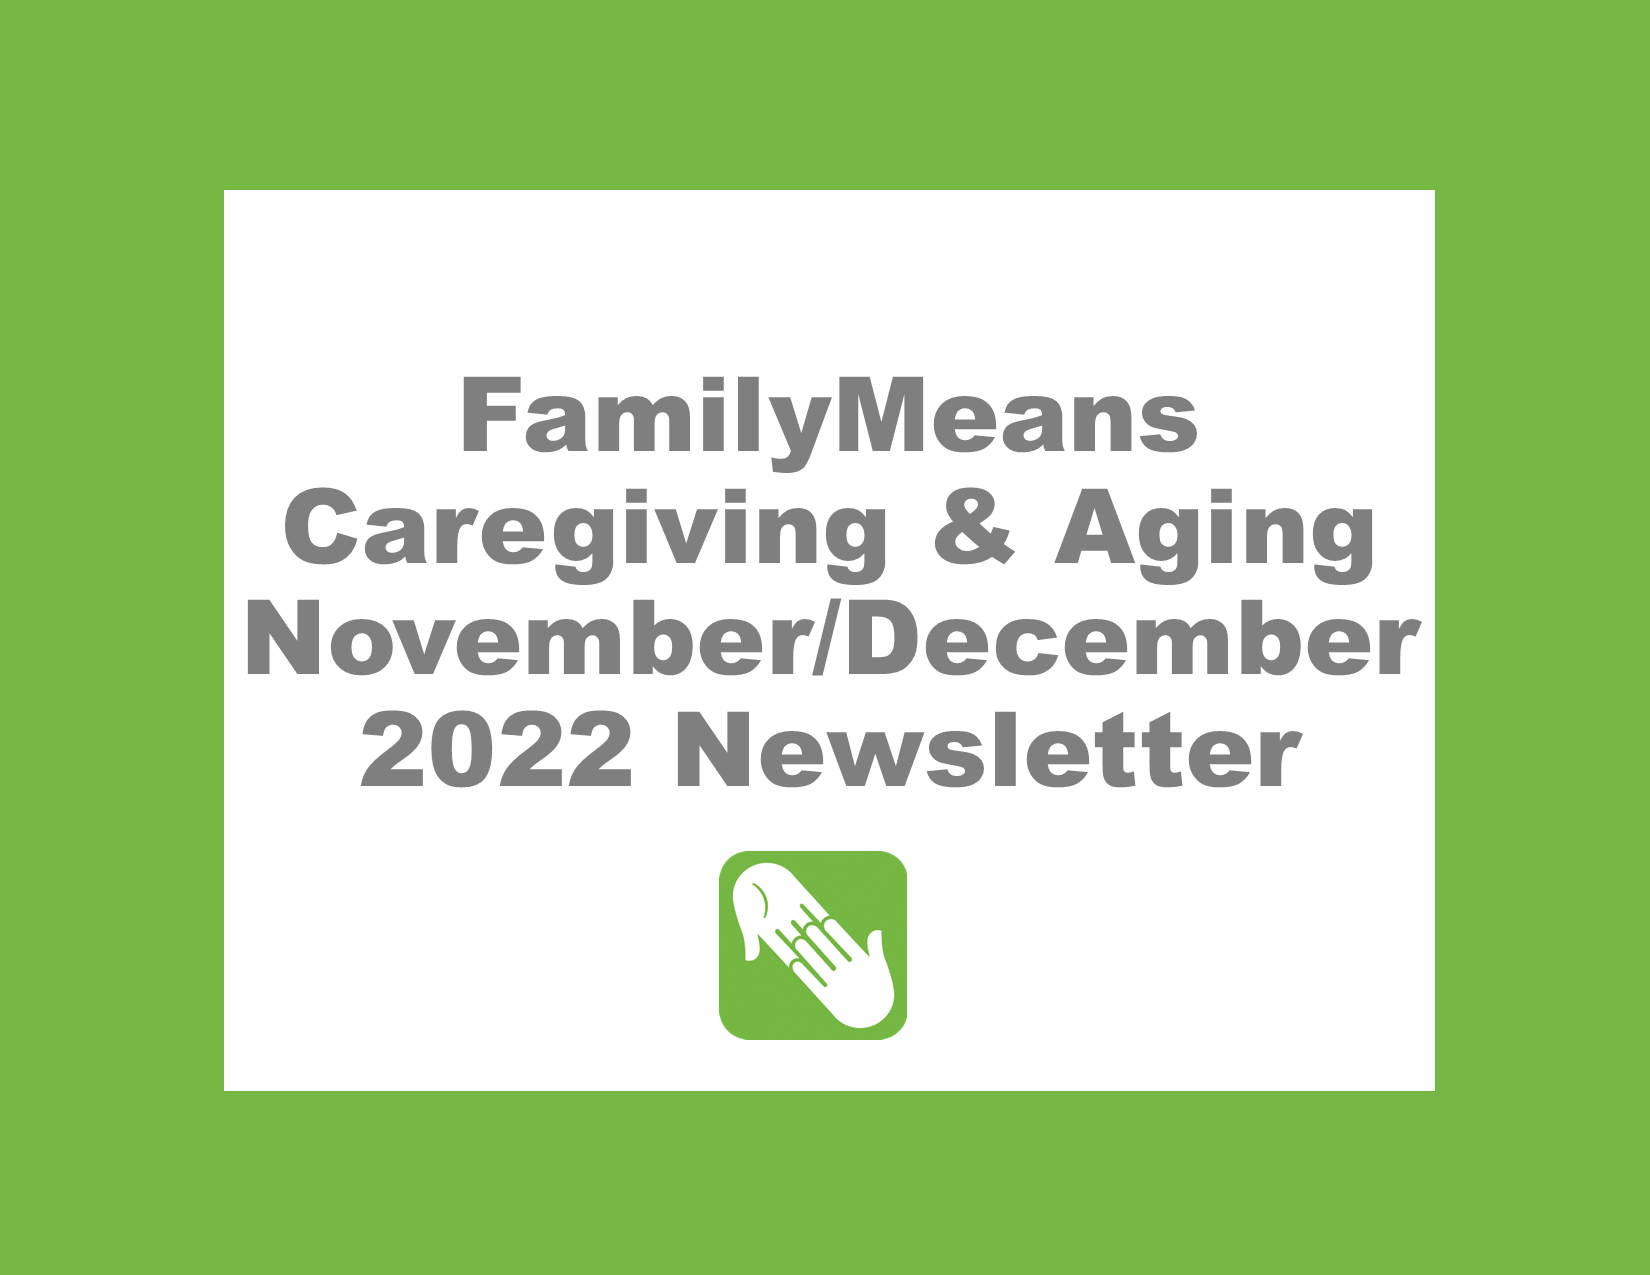 Caregiving & Aging November/December 2022 Newsletter